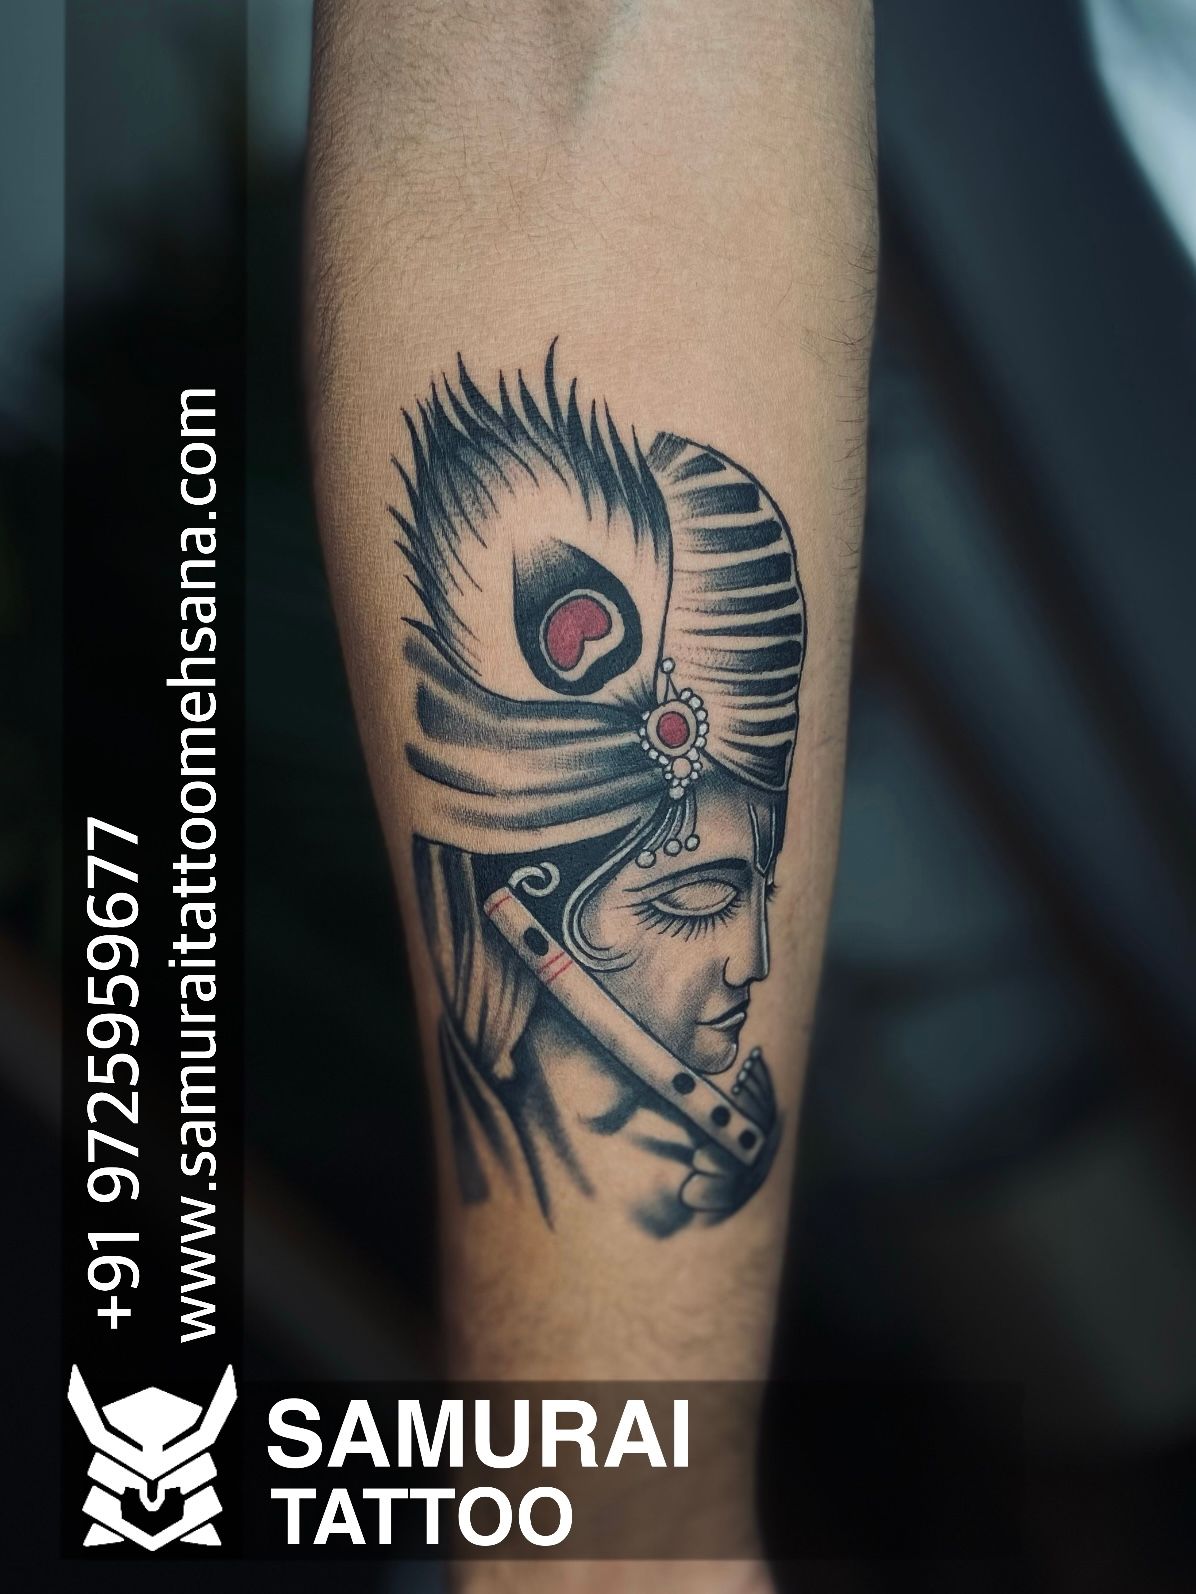 Lord krishna tattoo design #lordkrishna #tattoo - YouTube